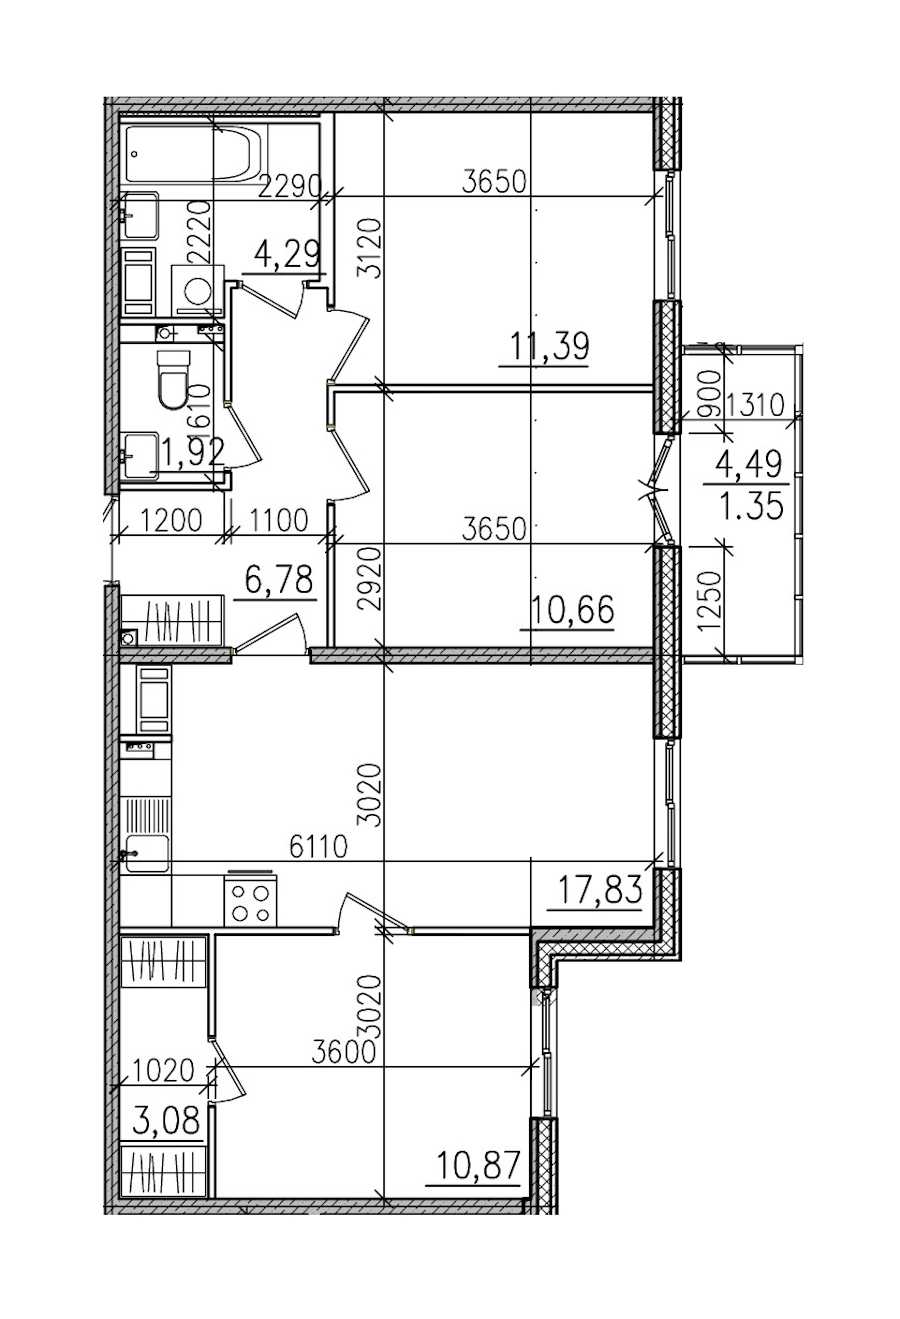 Трехкомнатная квартира в : площадь 68.17 м2 , этаж: 4 – купить в Санкт-Петербурге